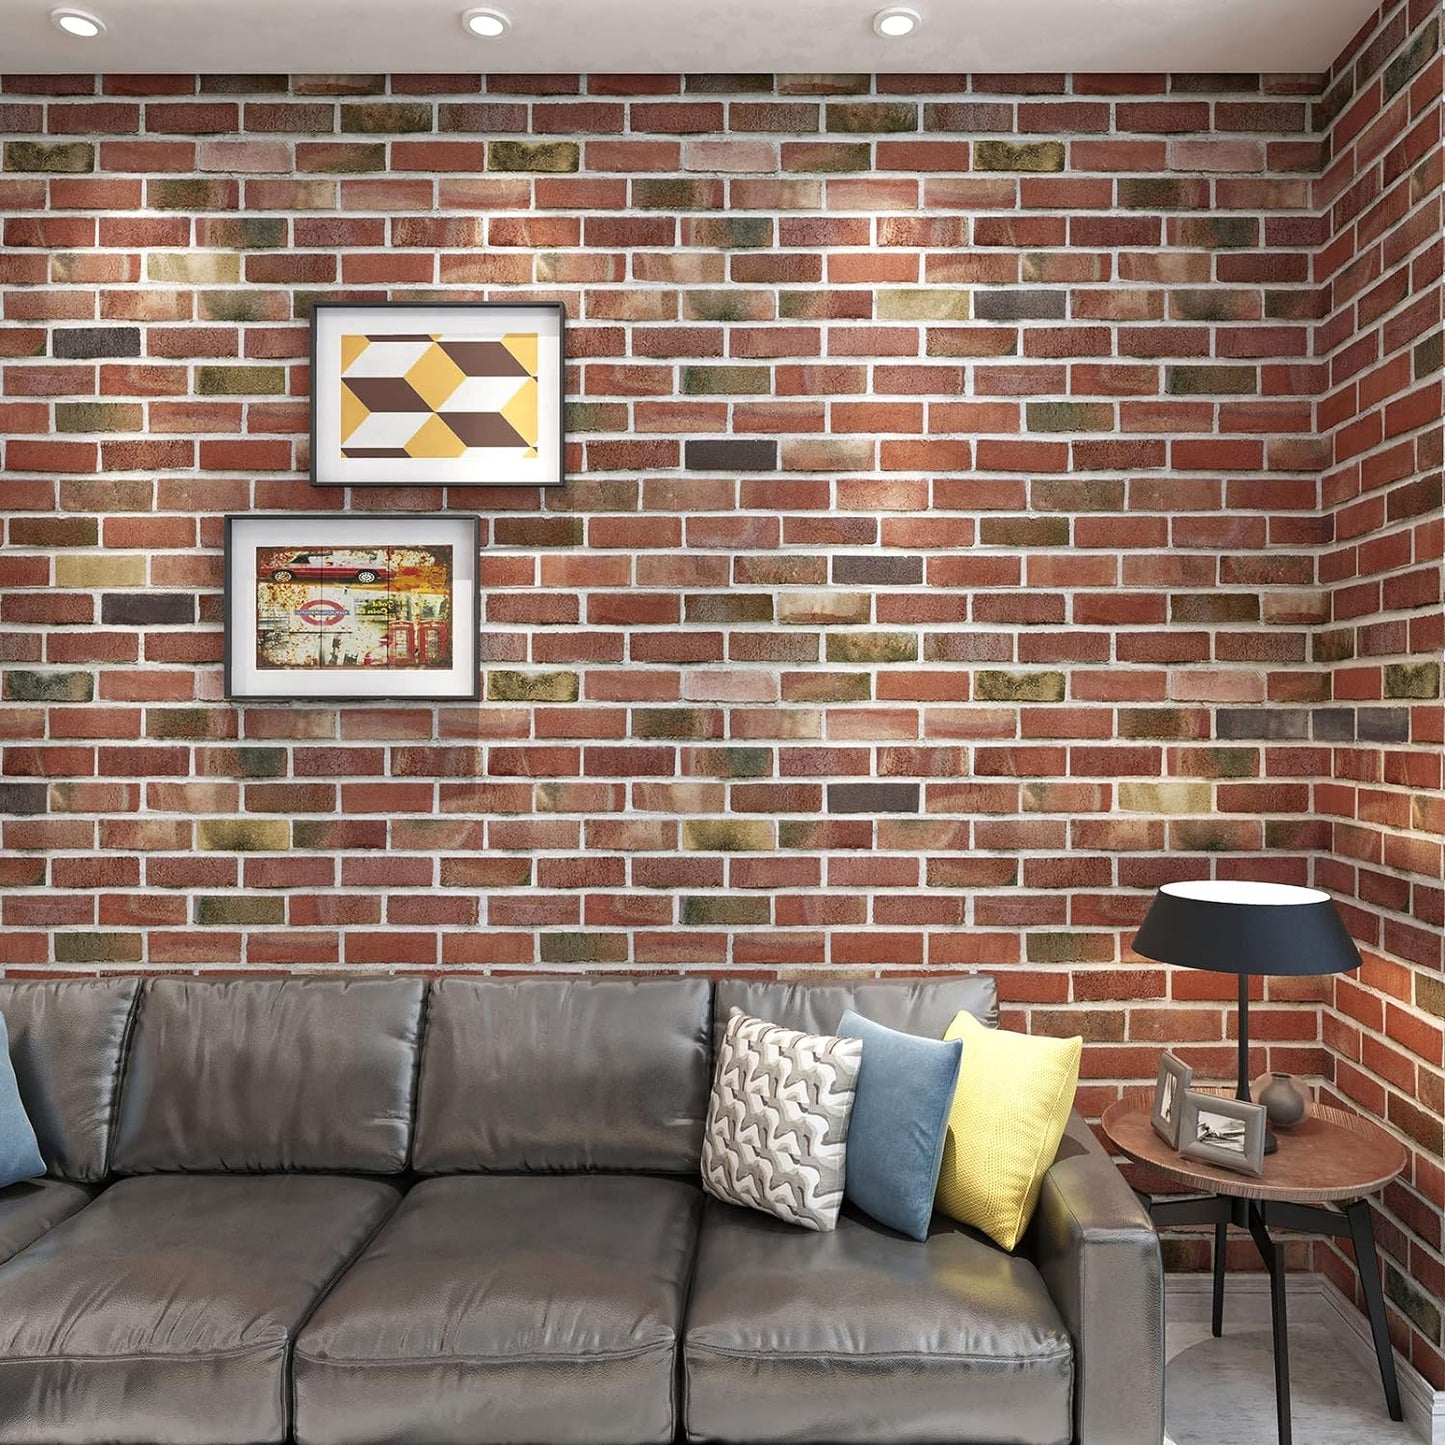 Art3d Paquete de 20 paneles de pared 3D de ladrillo sintético de 105 pies cuadrados, despegables y pegados en color rojo marrón, papel tapiz autoadhesivo de espuma impermeable para dormitorio, baño, cocina